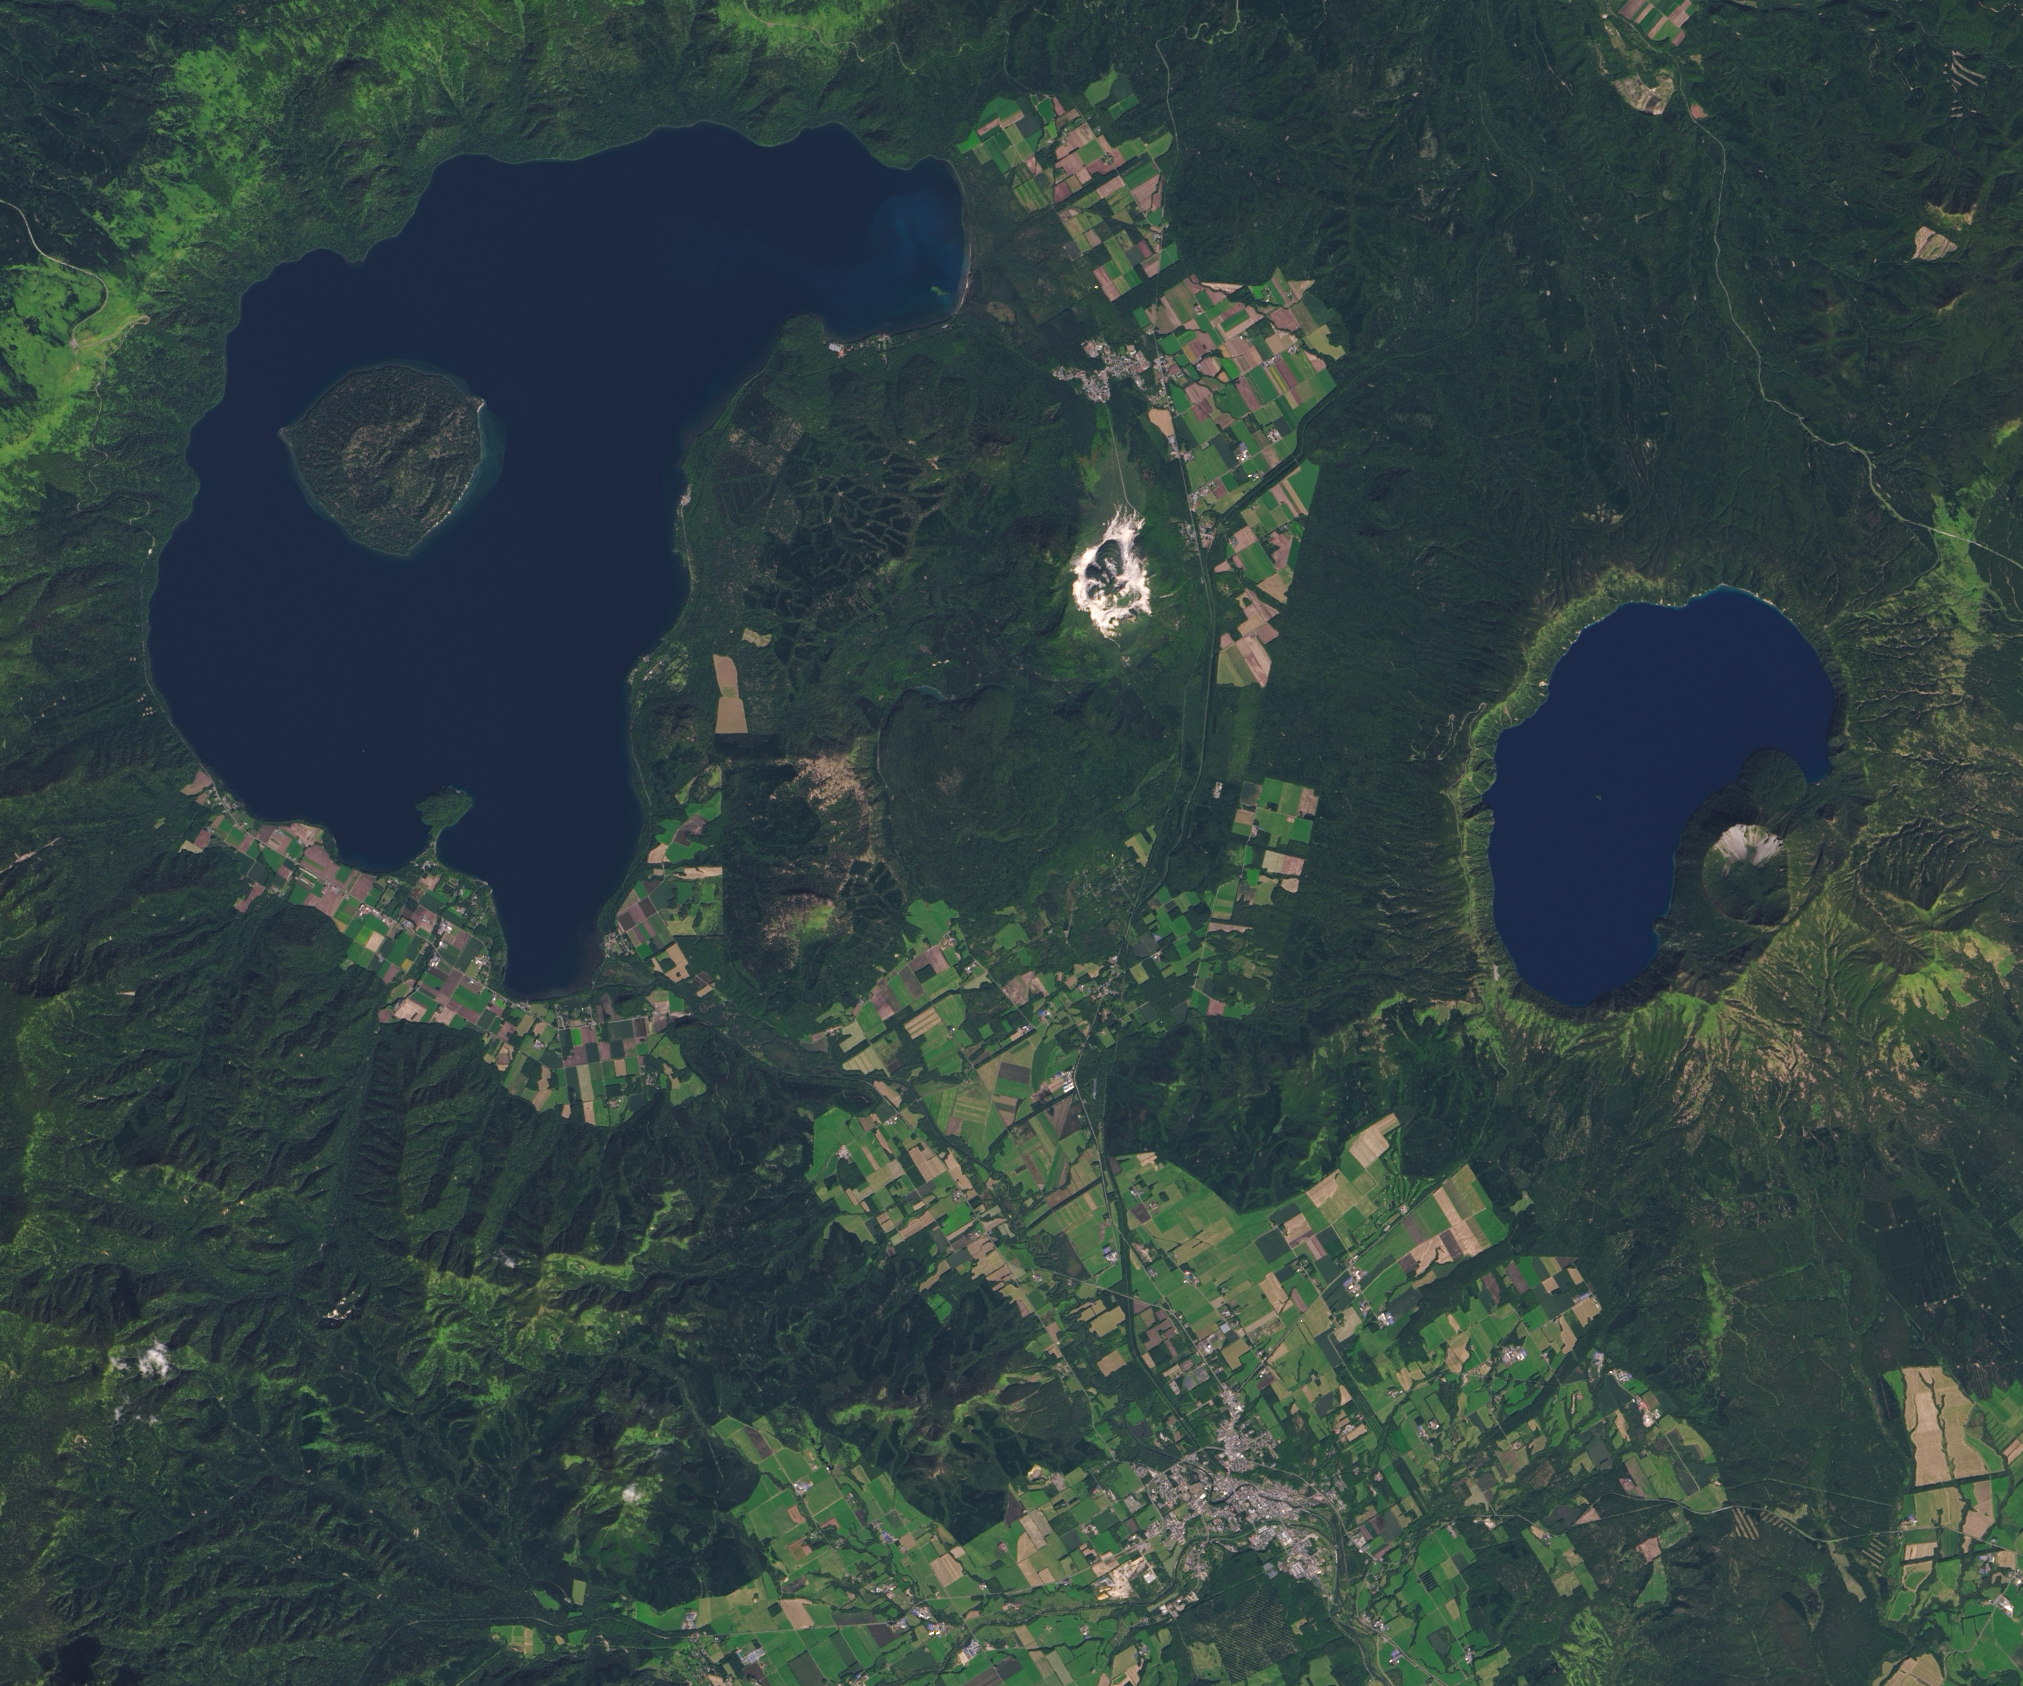 Снимки со спутников озёра